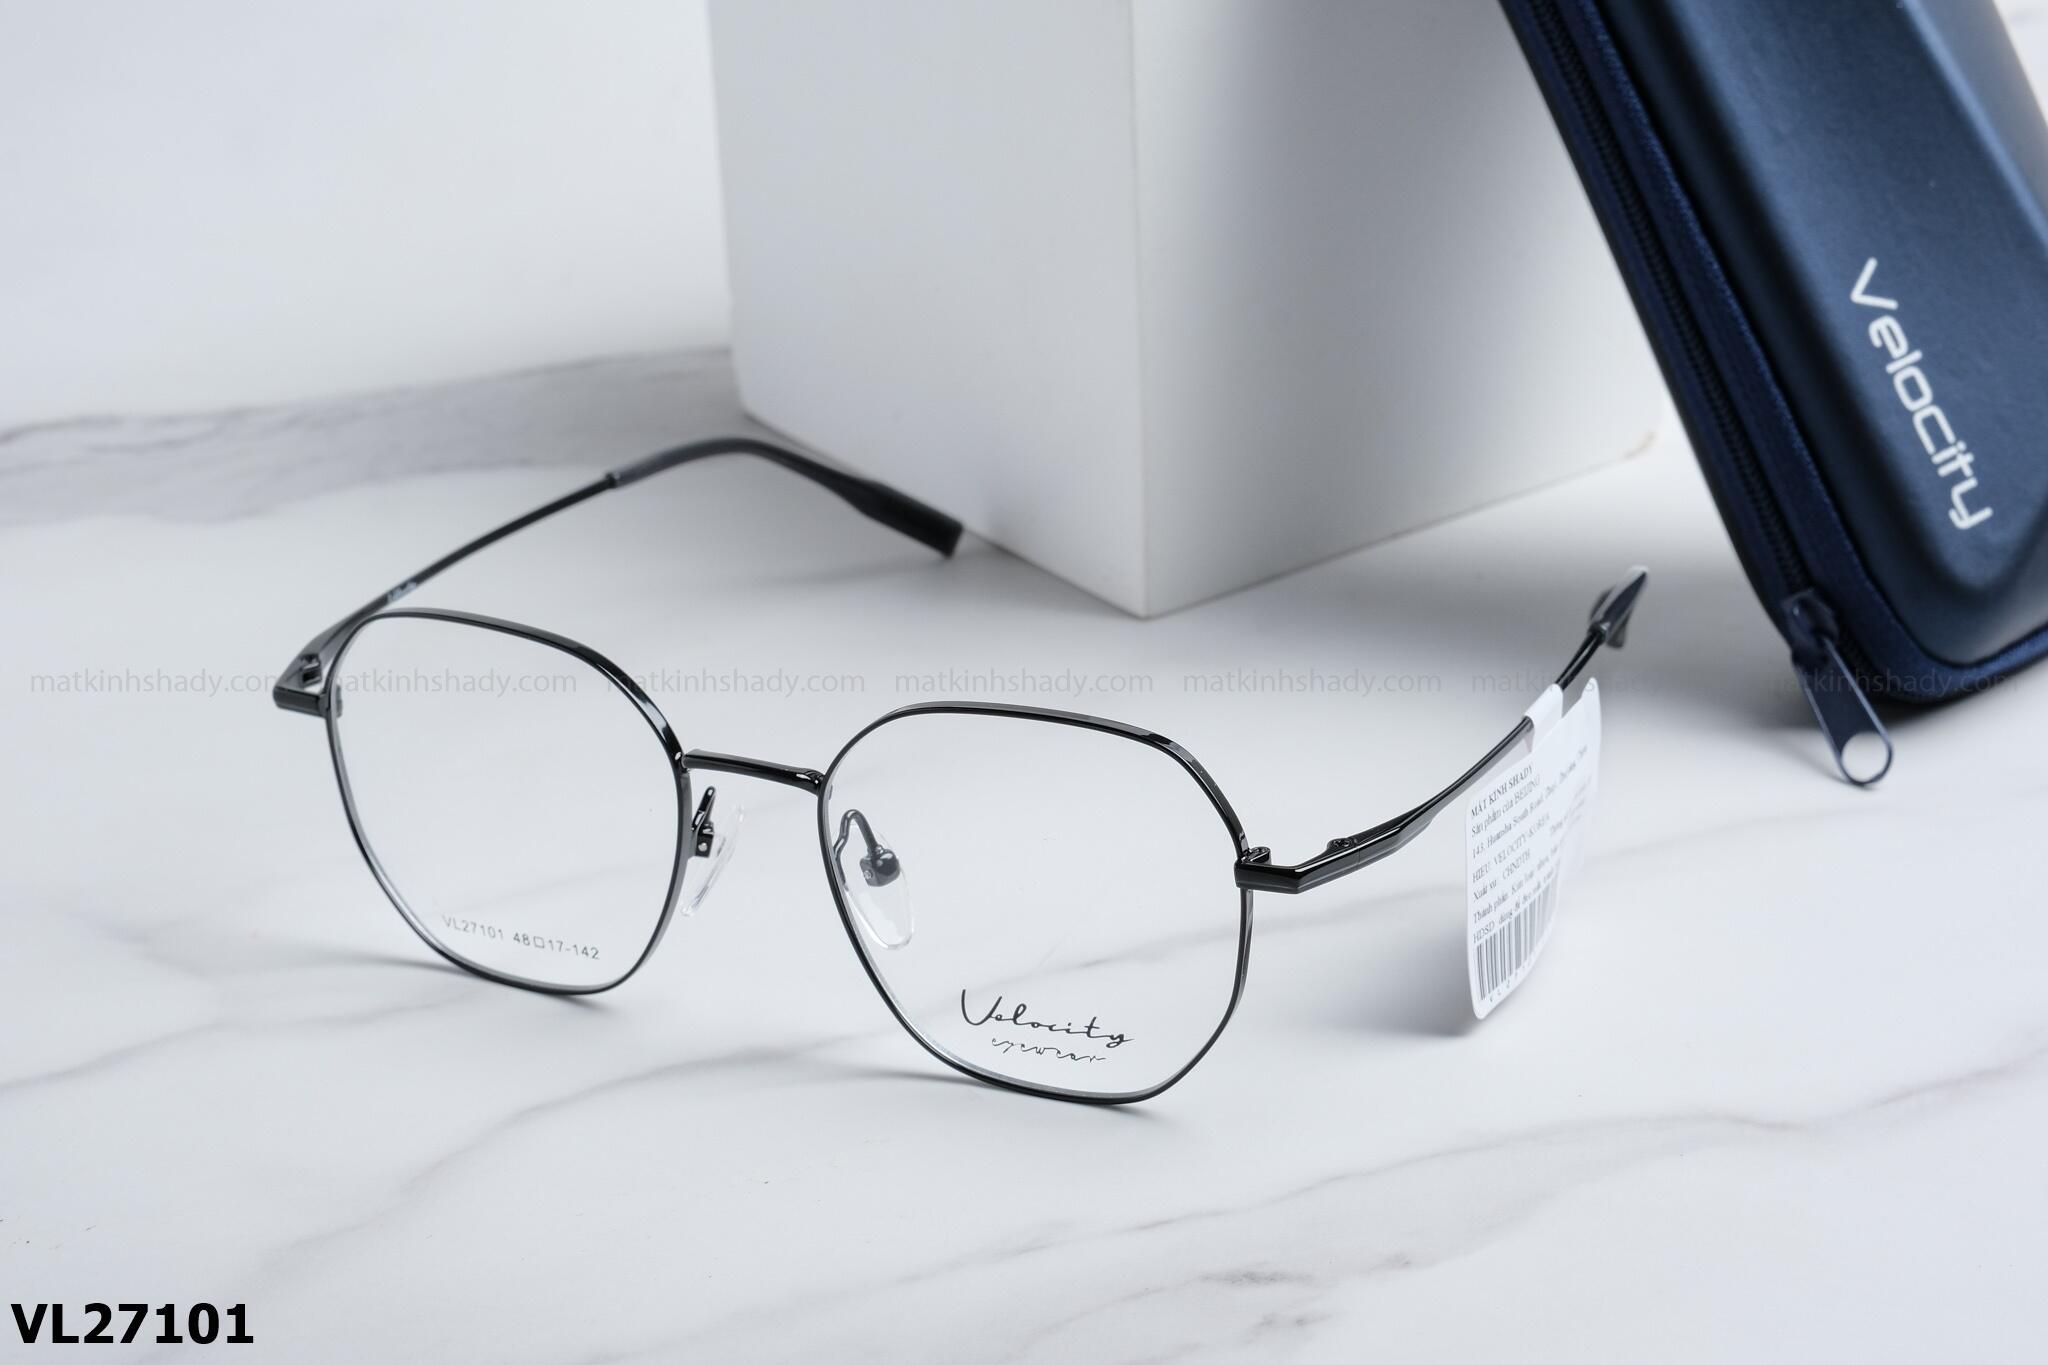  Velocity Eyewear - Glasses - VL27101 